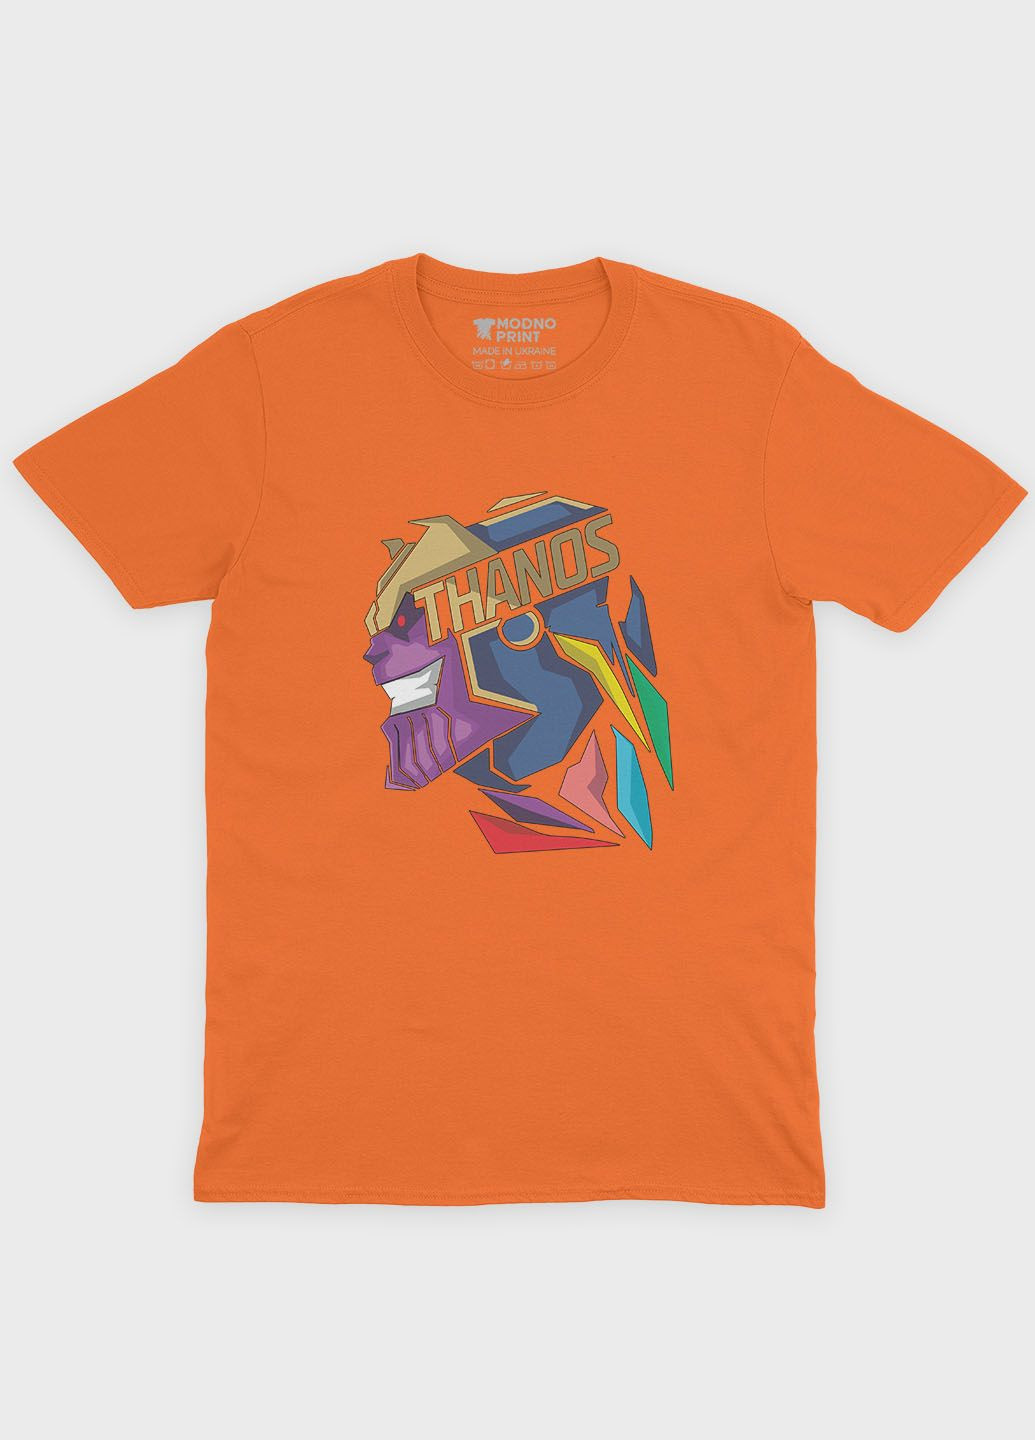 Оранжевая демисезонная футболка для мальчика с принтом супезлодея - танос (ts001-1-ora-006-019-002-b) Modno